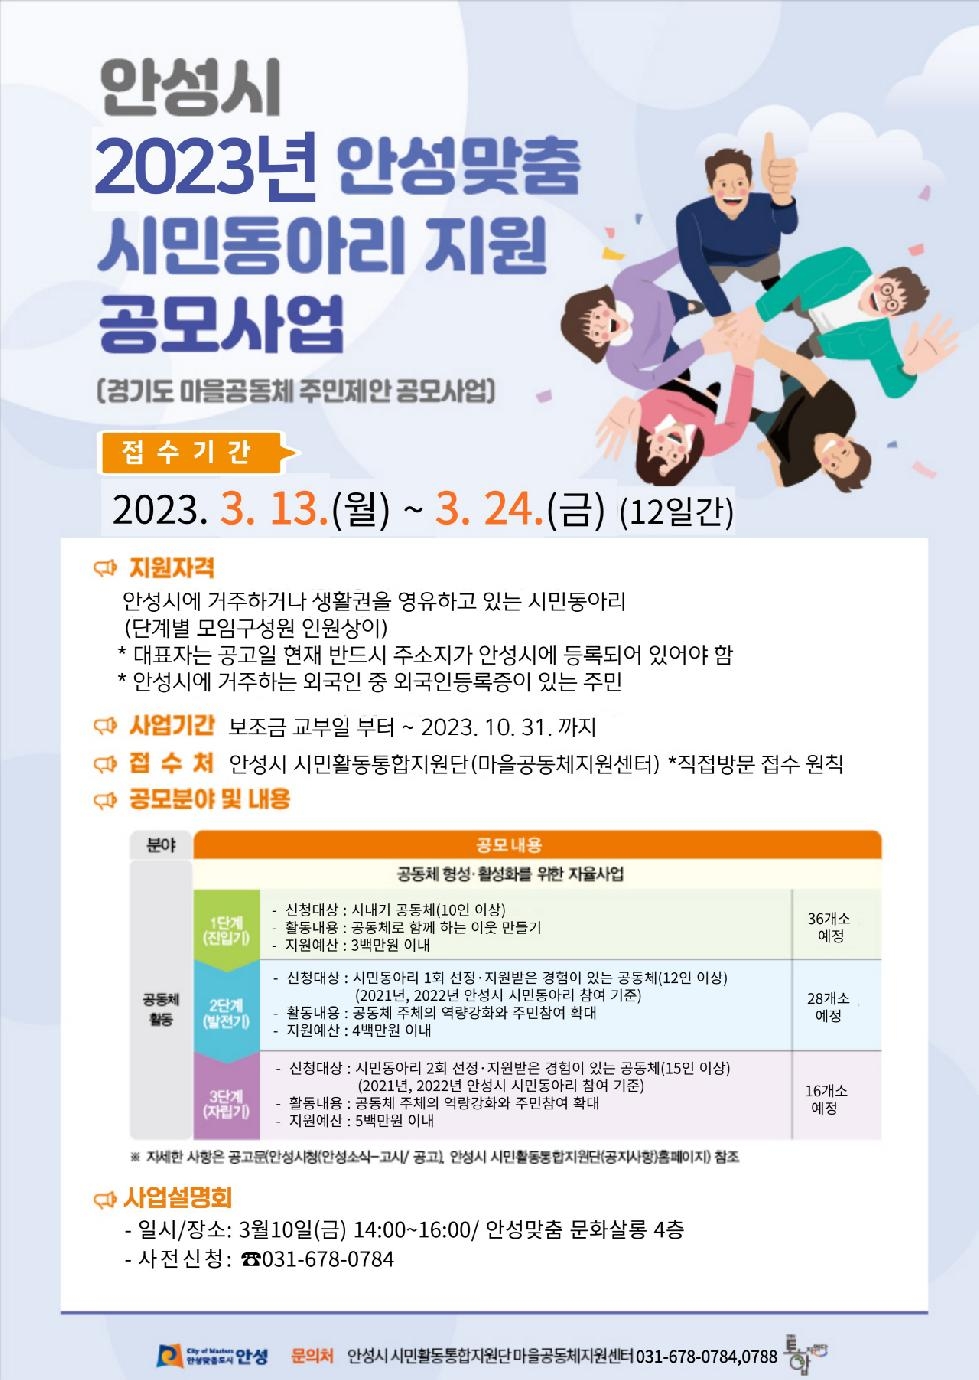 2023년 안성맞춤 시민동아리 지원 공모사업